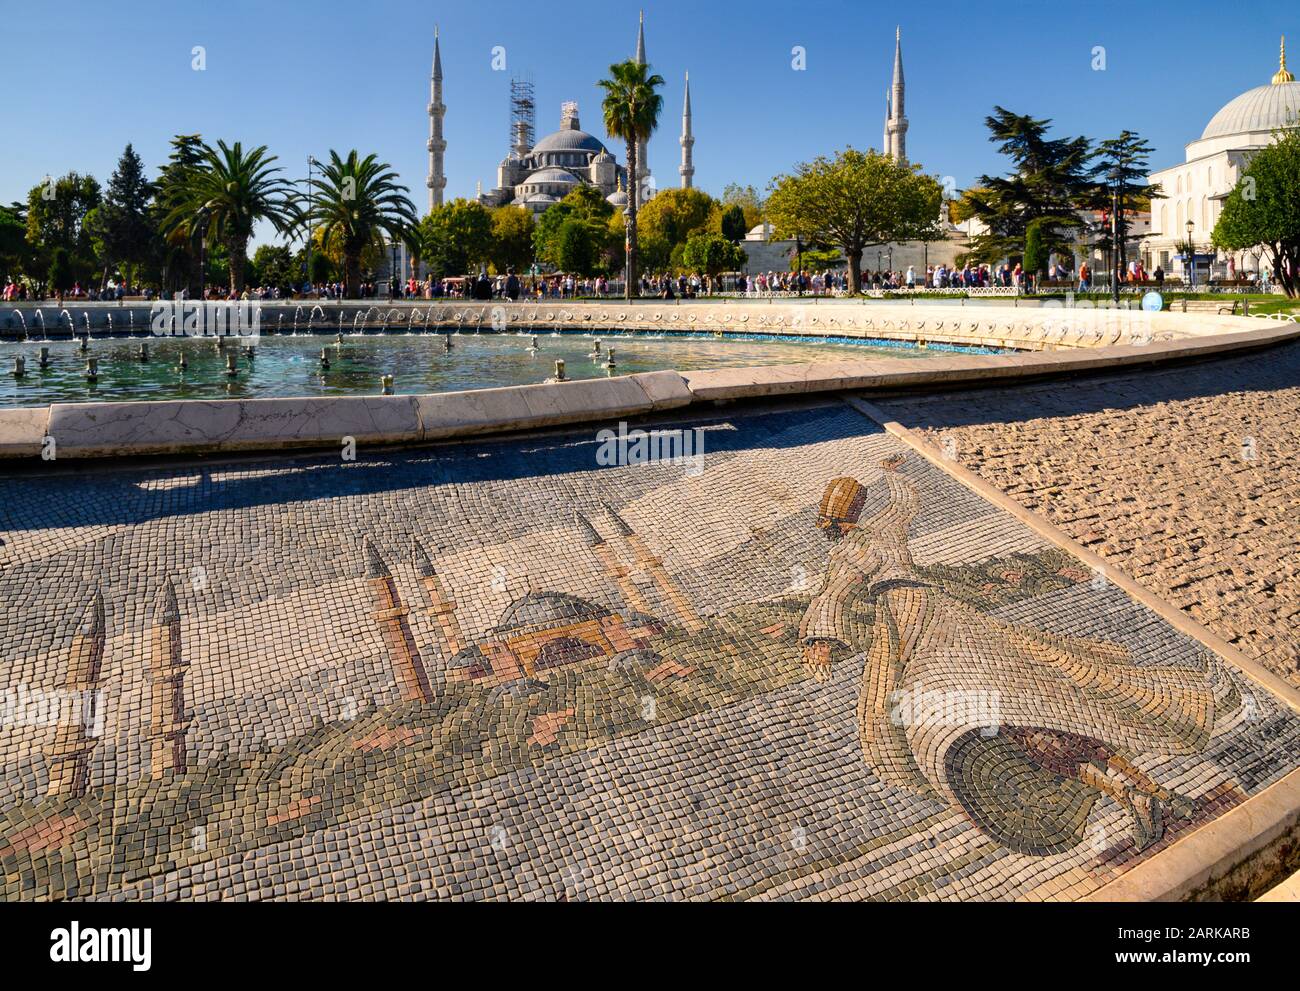 In den Mosaiken auf dem Tanzbrunnen am Sultanahmet-Platz in Istanbul, Türkei, ist ein wirbelndes Derwisch dargestellt. Die Blaue Moschee steht im Hintergrund. Stockfoto